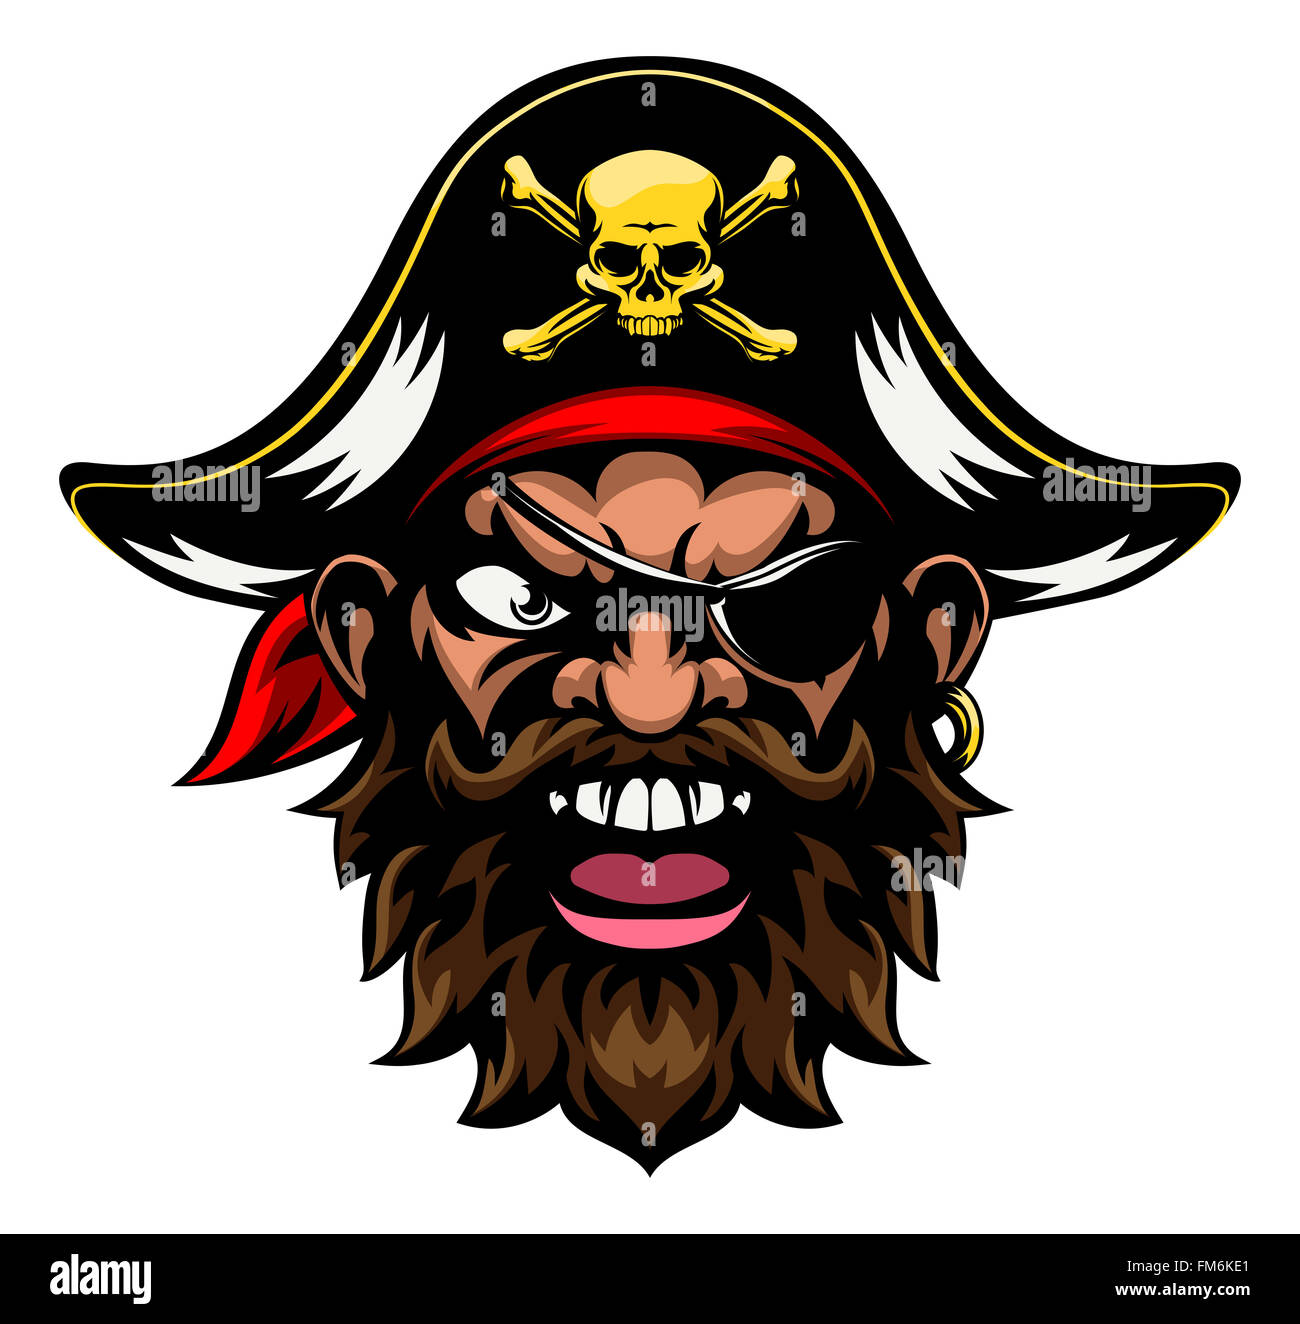 Una caricatura significa duro buscando mascota deportiva carácter pirata Foto de stock